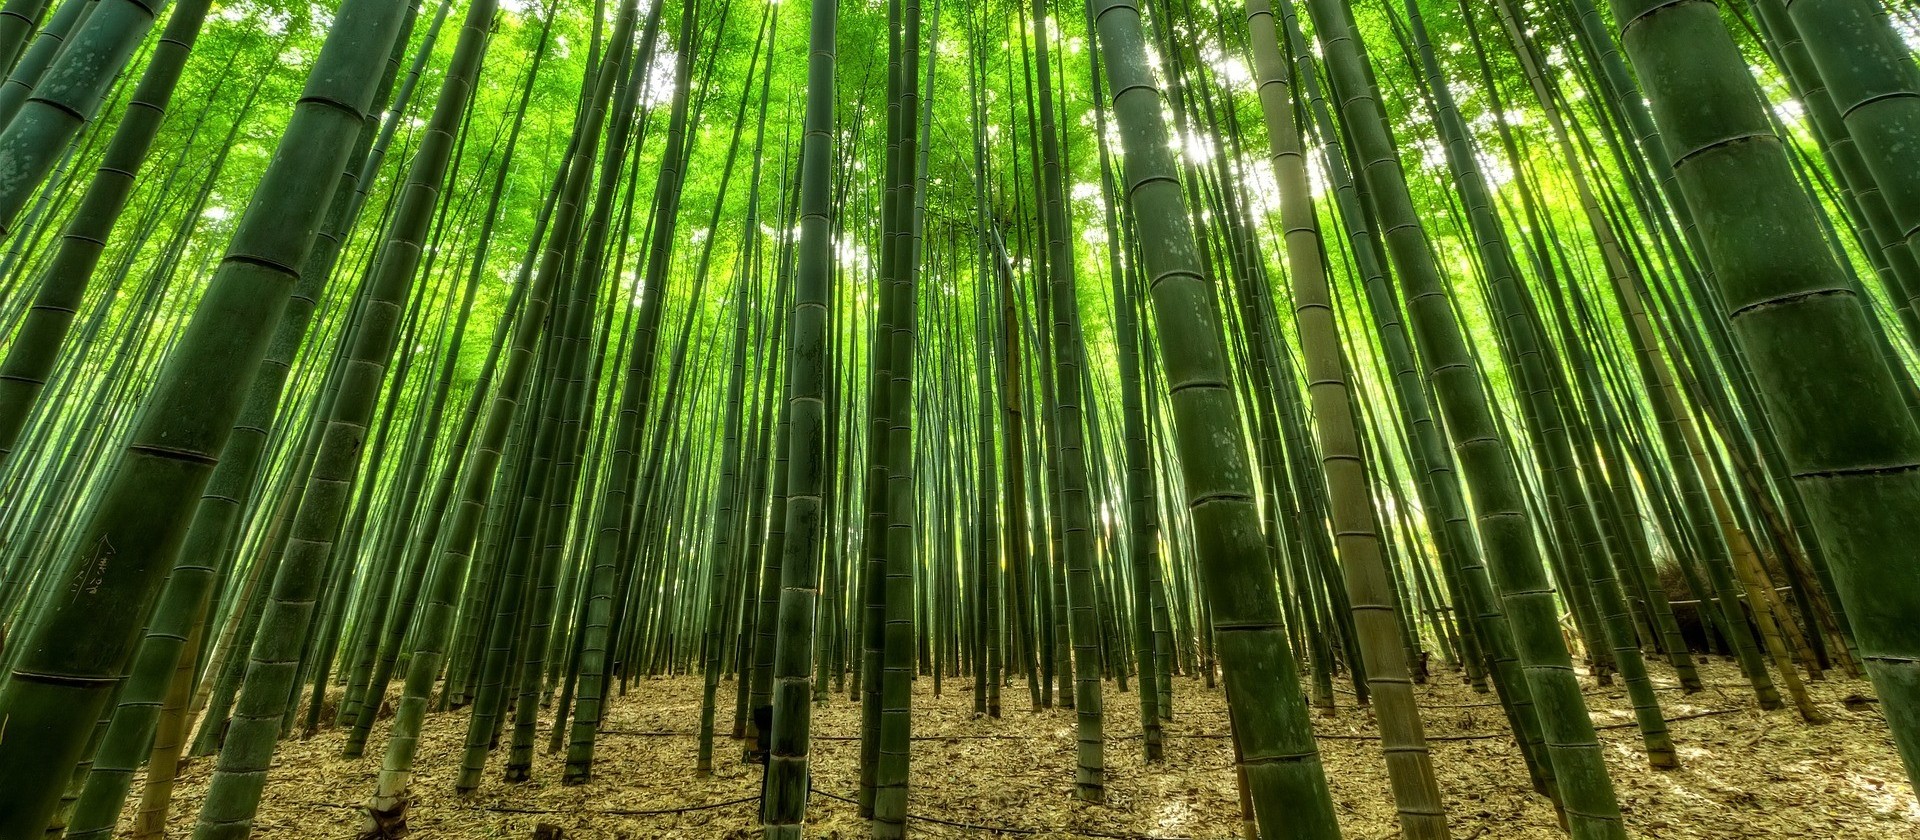 Assembleia Legislativa aprova projeto de lei de incentivo à cultura do bambu